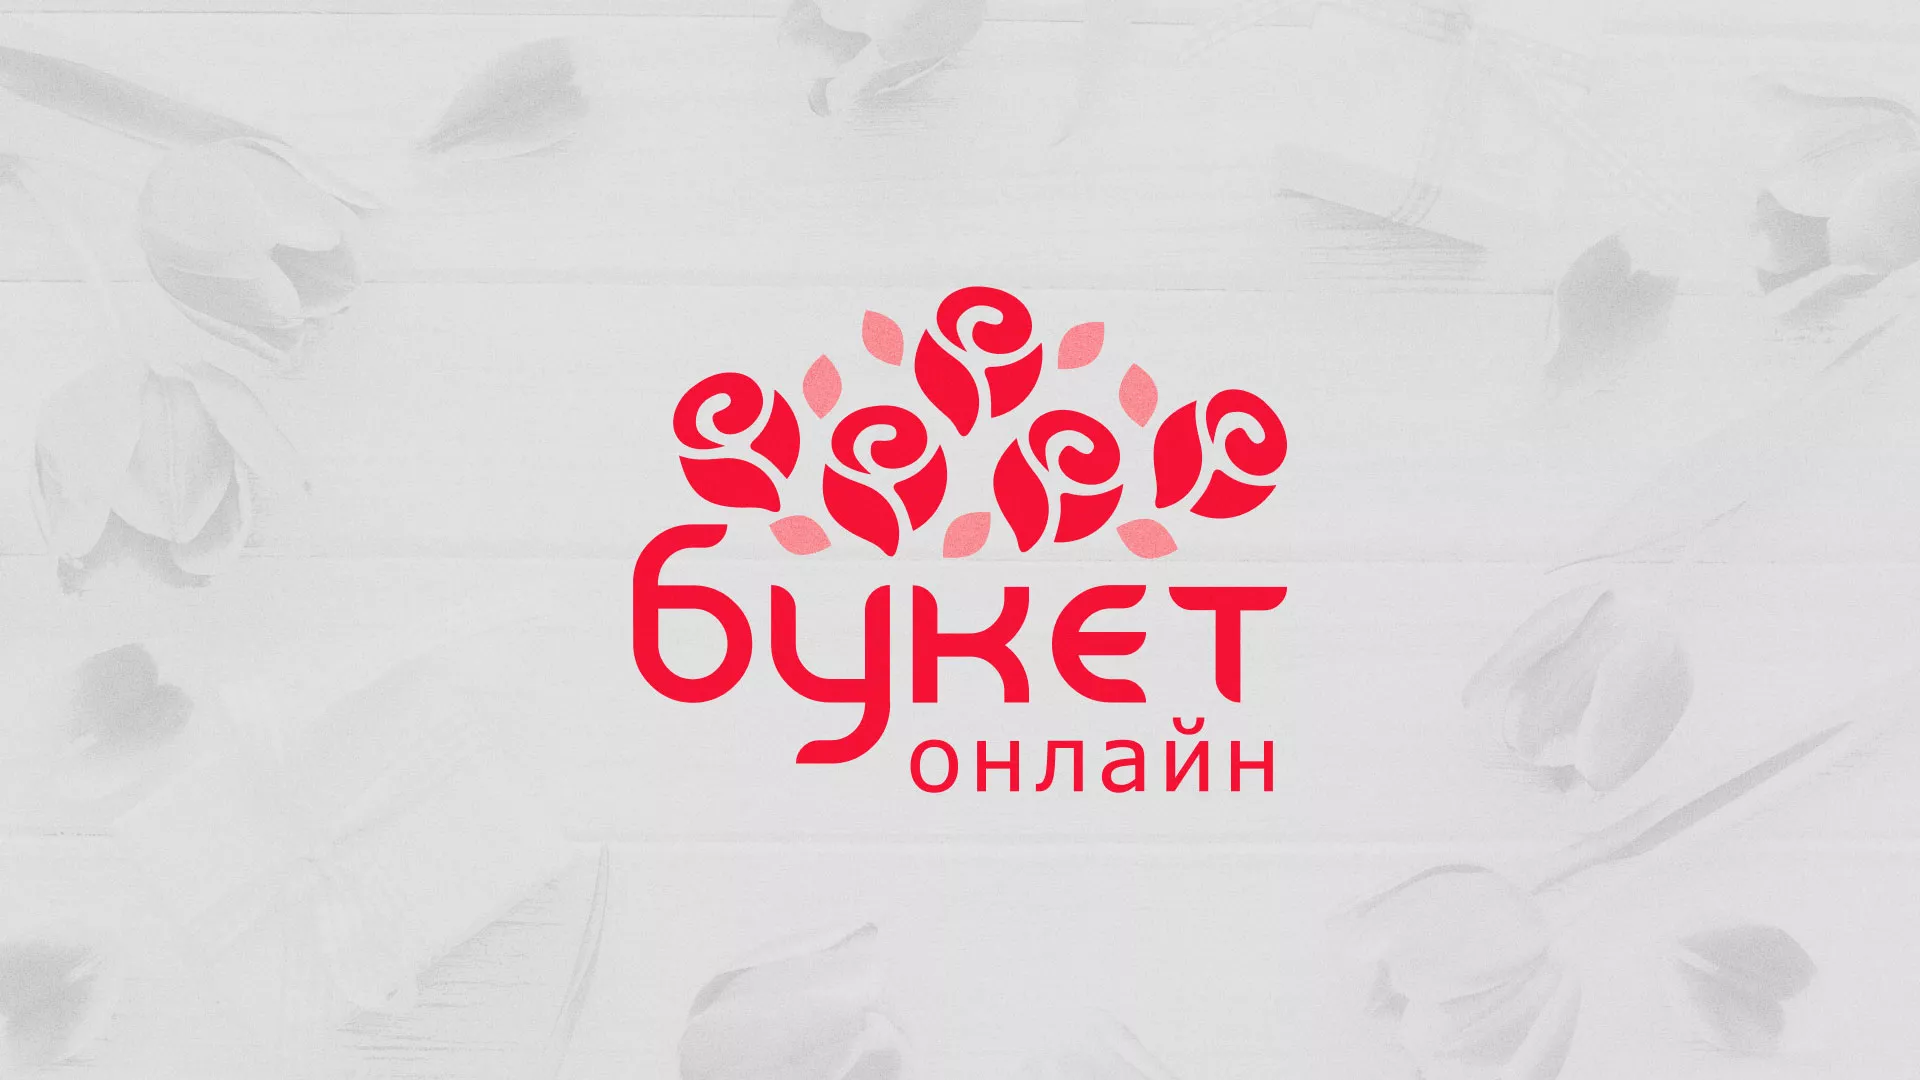 Создание интернет-магазина «Букет-онлайн» по цветам в Семилуках